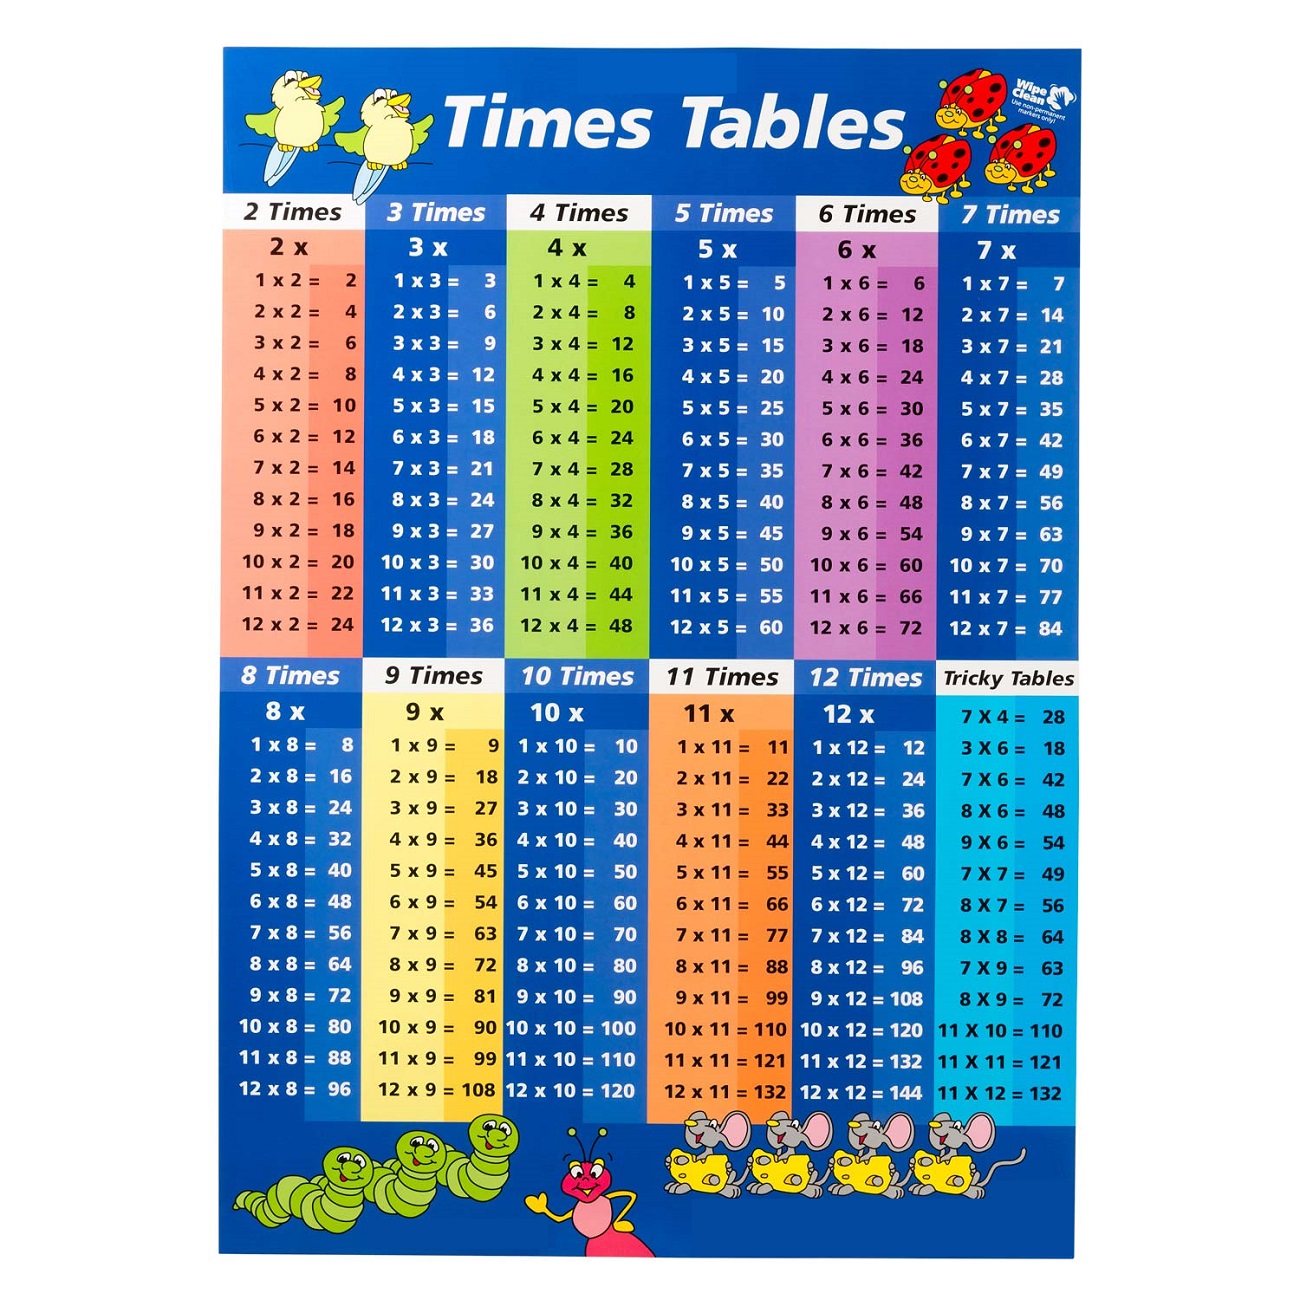 Times Tables Printable Chart Printable World Holiday